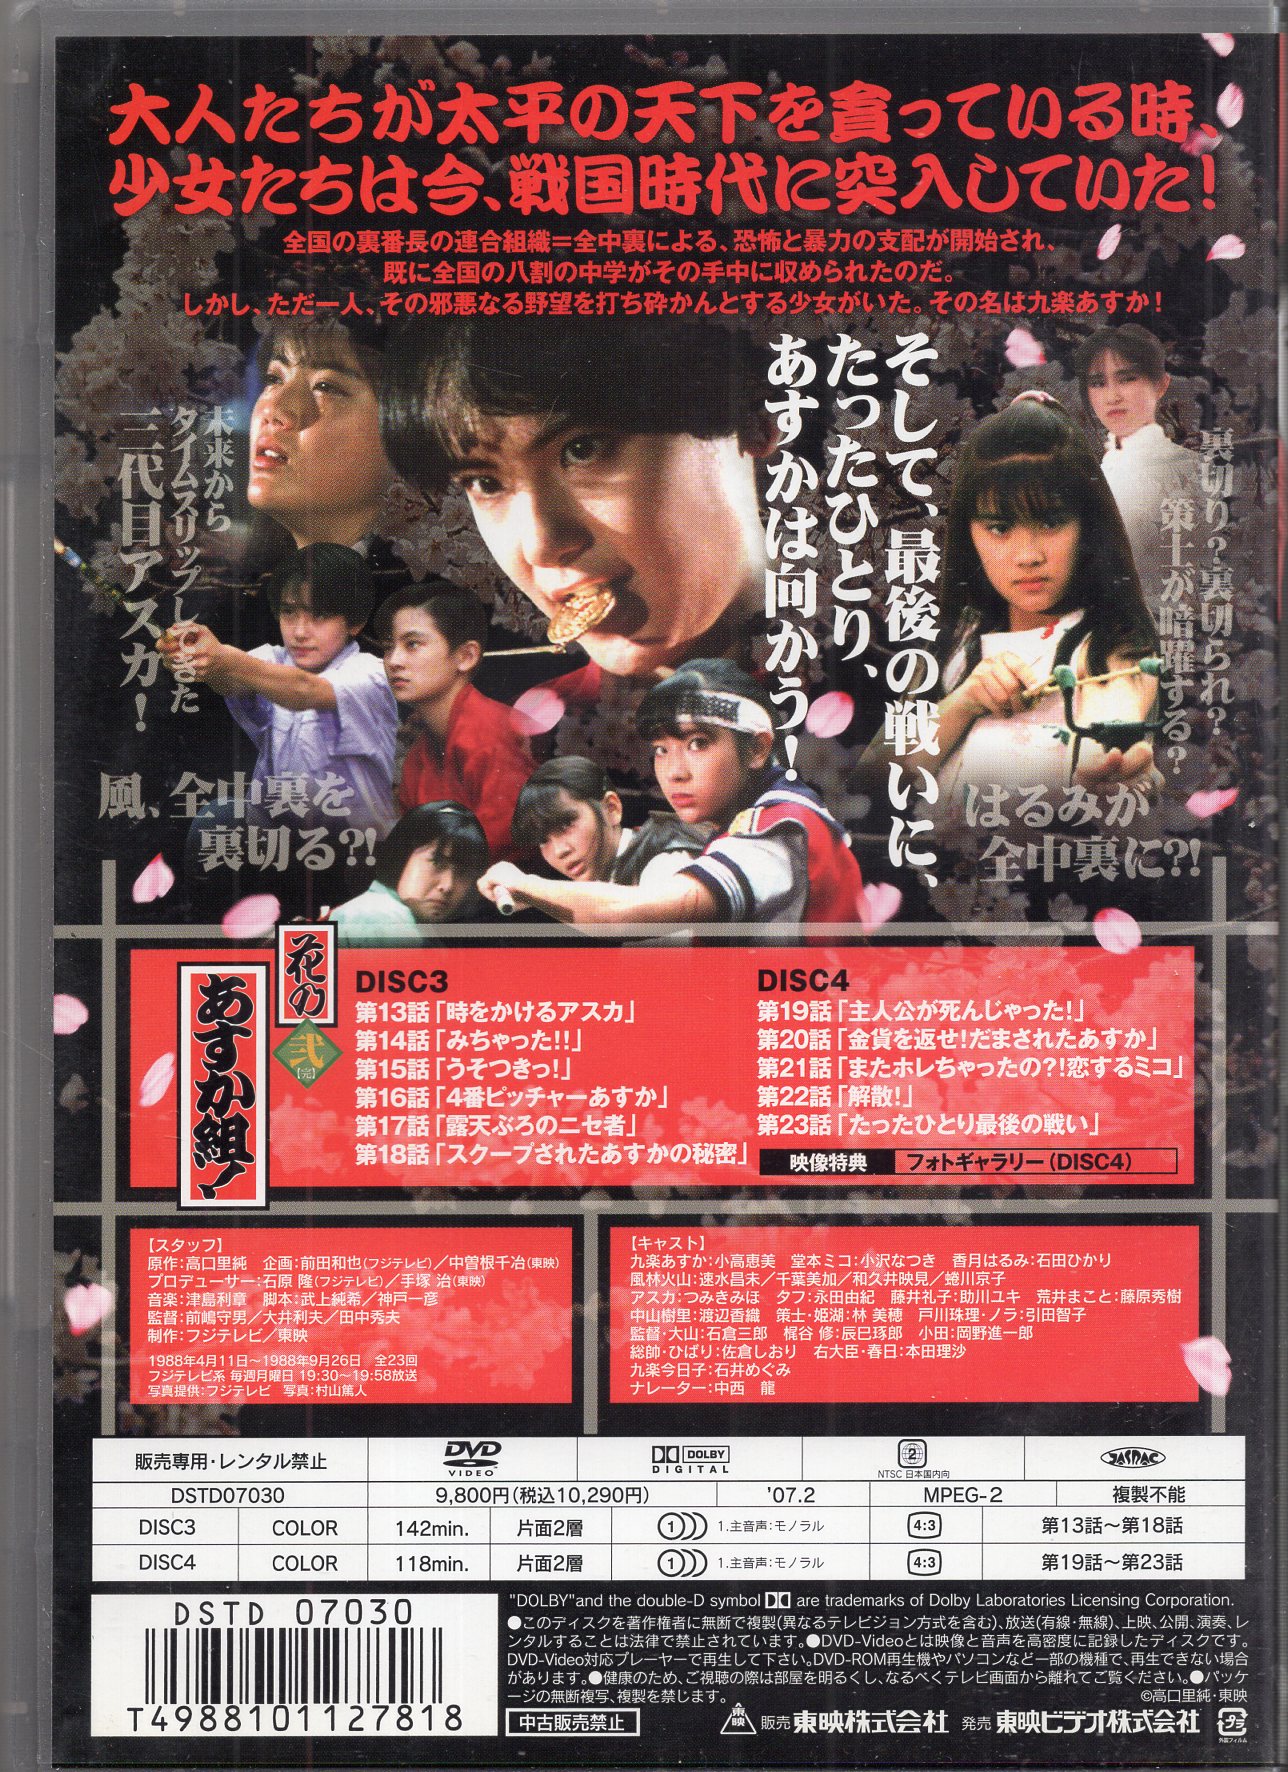 1988年放送のドラマ花のあすか組DVD壱と弍です - csihealth.net